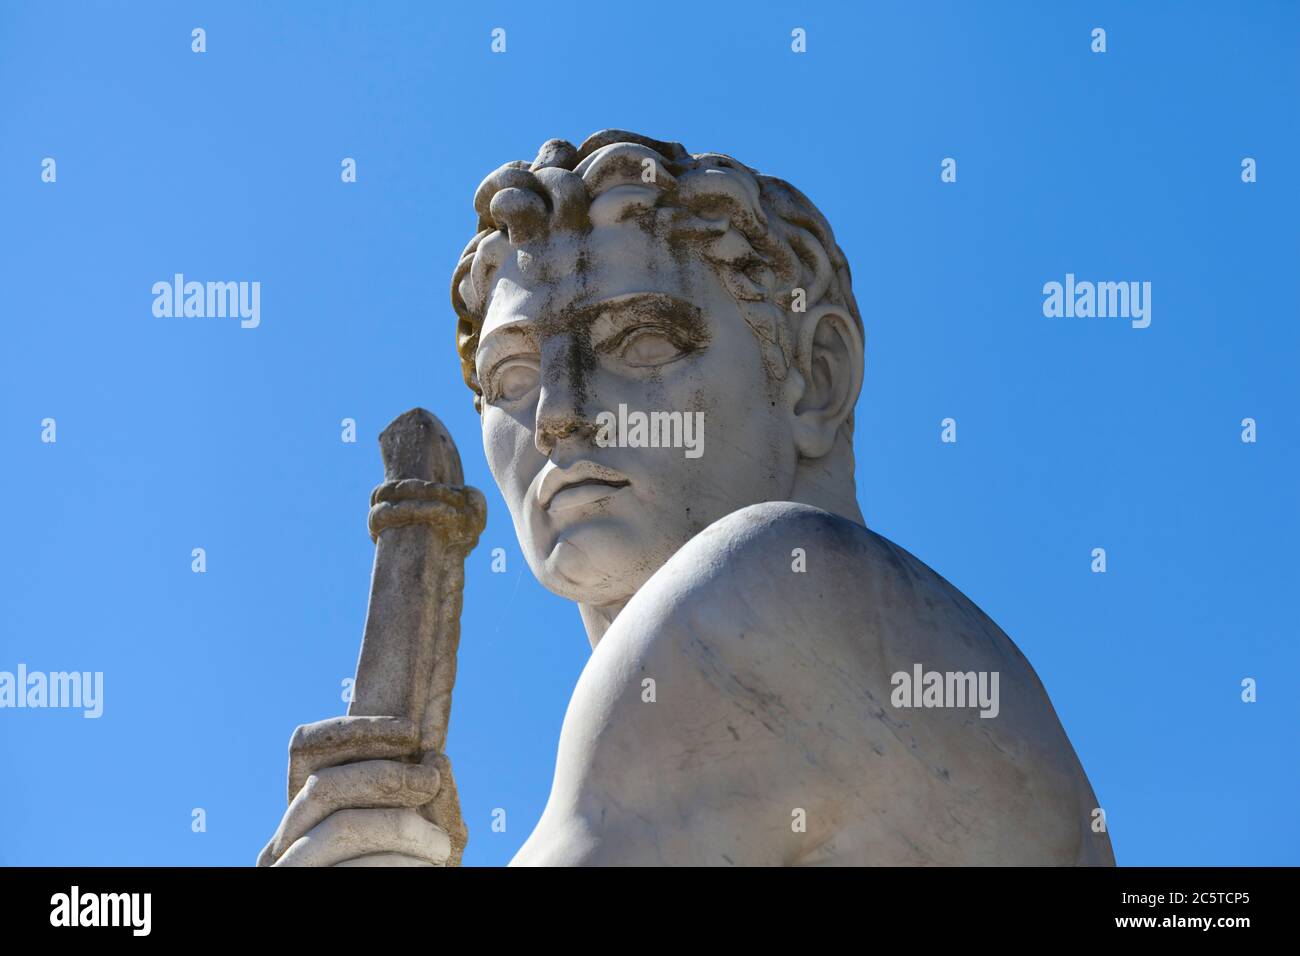 Portrait de statue de marbre d'athlète contre ciel bleu - lumière du soleil Banque D'Images